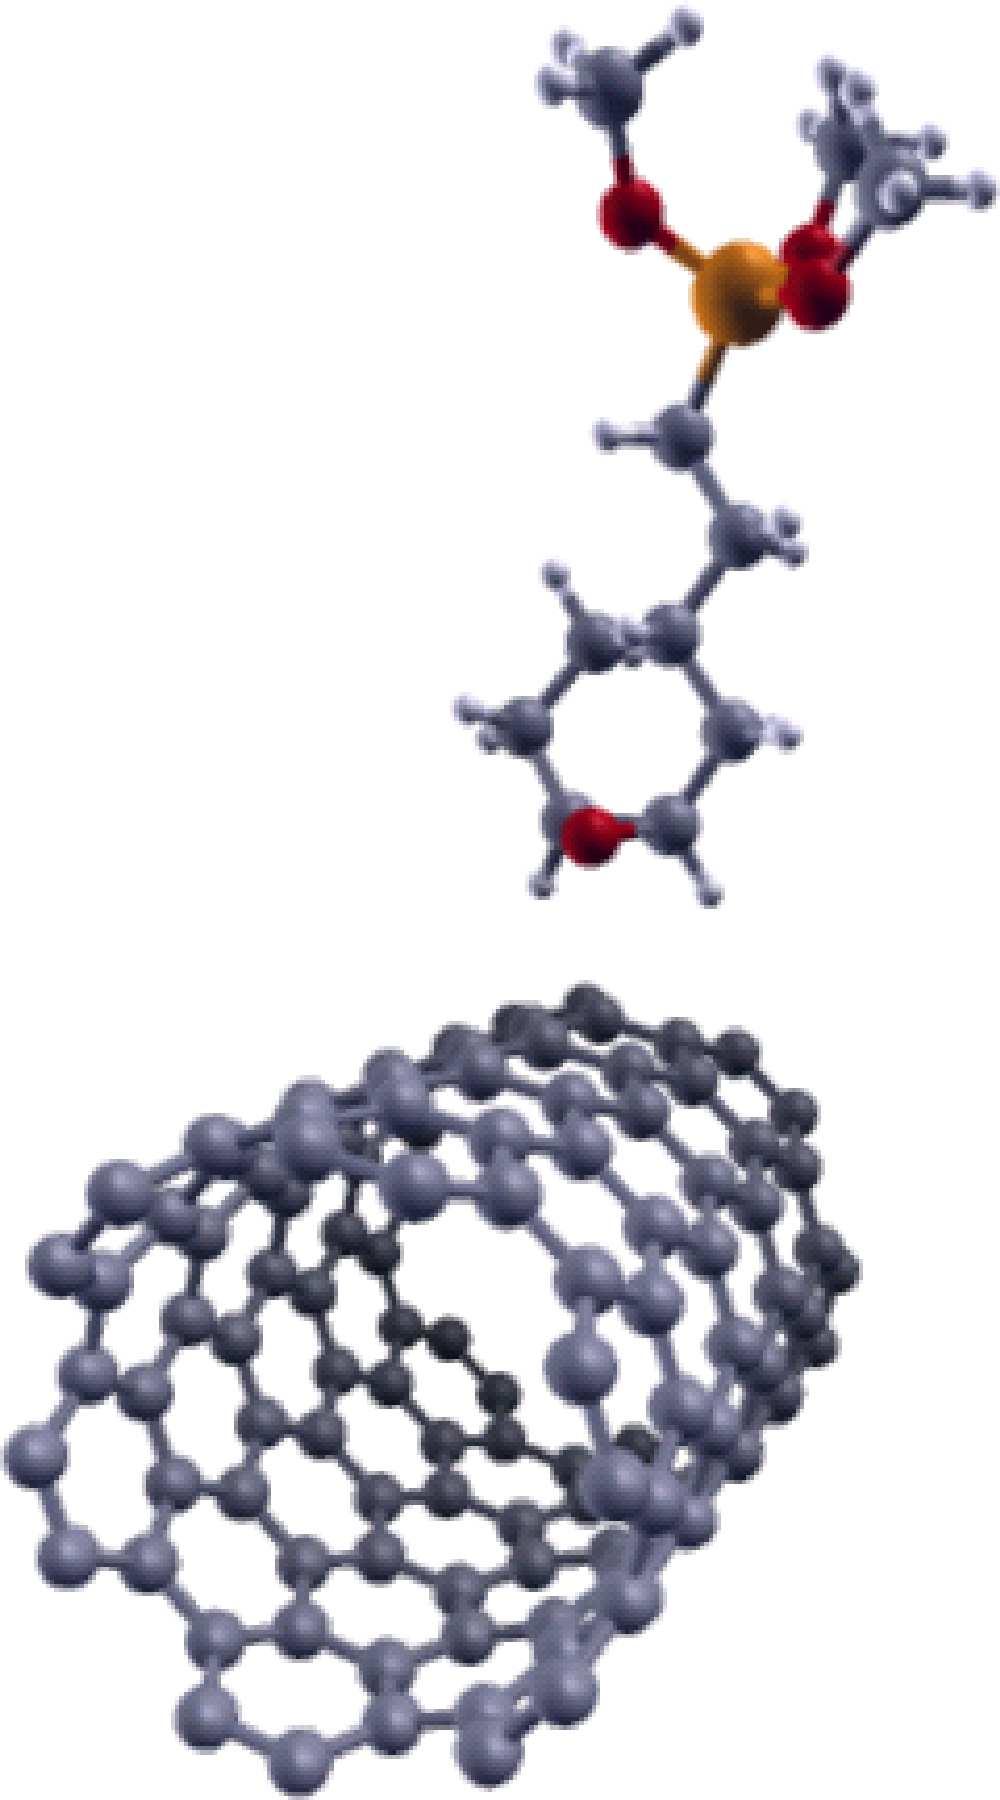 17 Configurações consideradas para a adsorção do silano ethyl nos nanotubos